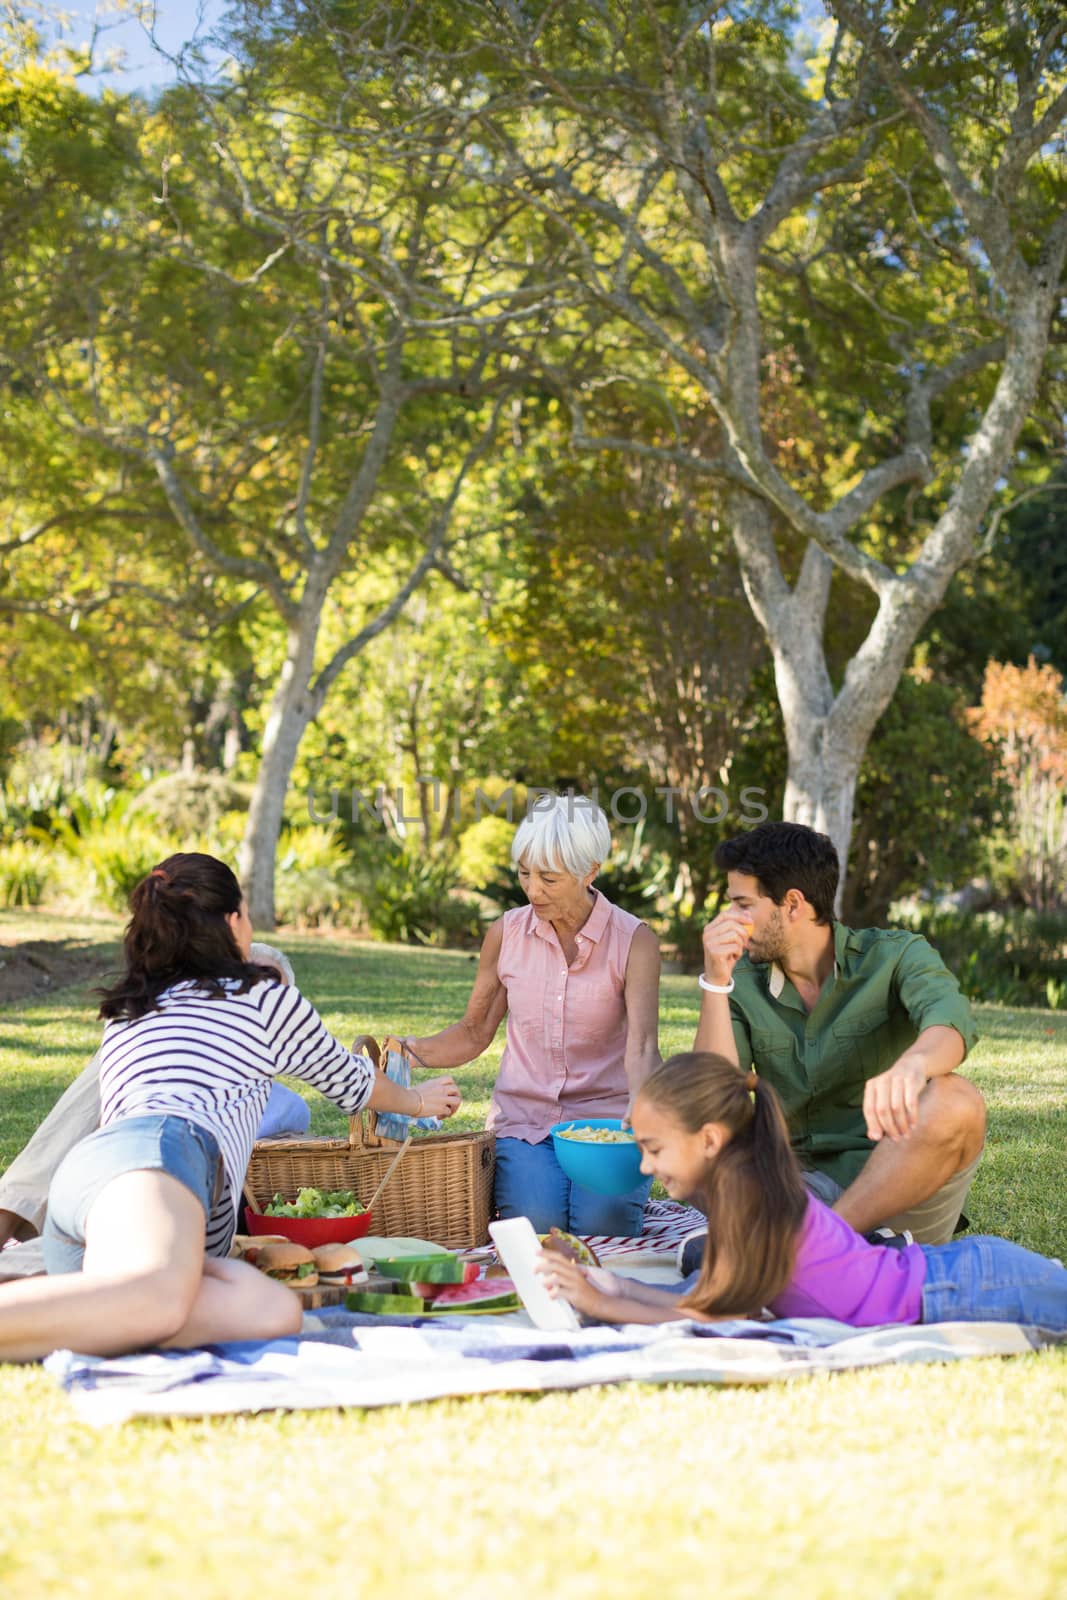 Happy family having picnic in the park by Wavebreakmedia